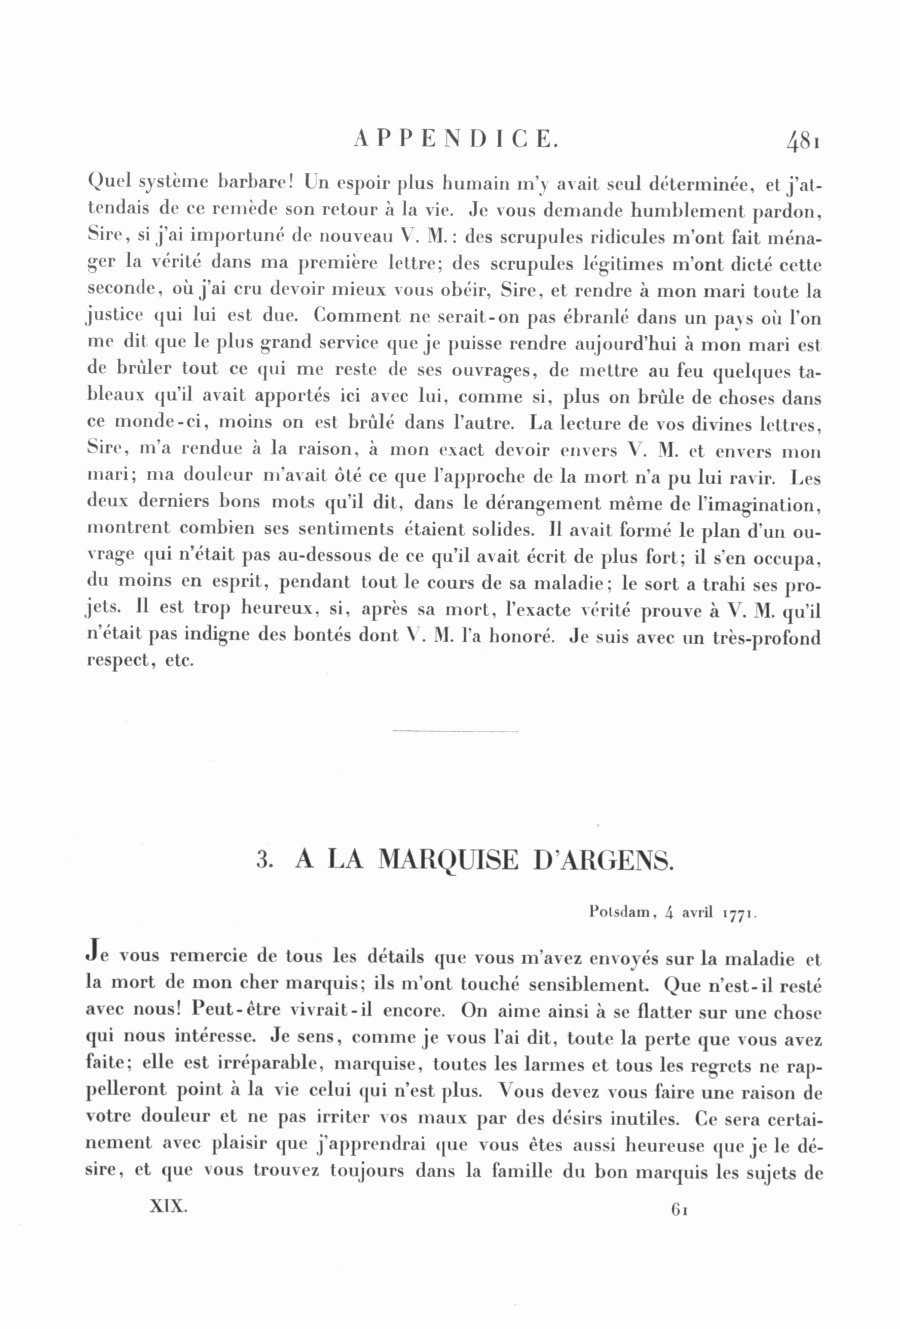 S. 481, Obj. 2